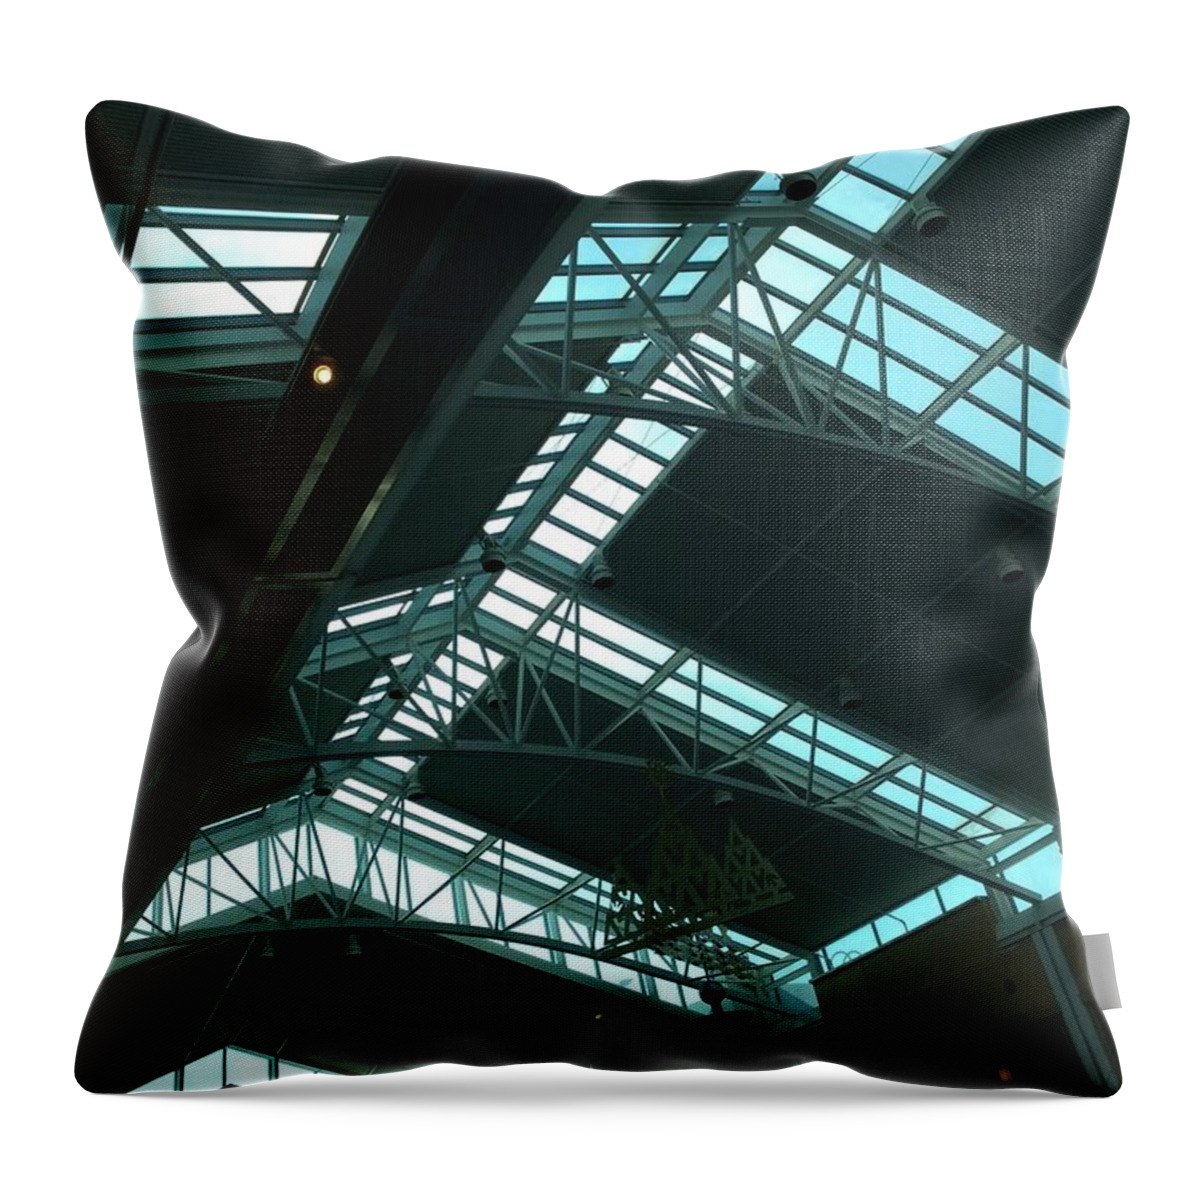 Black Throw Pillow featuring the digital art Airport by Cooky Goldblatt